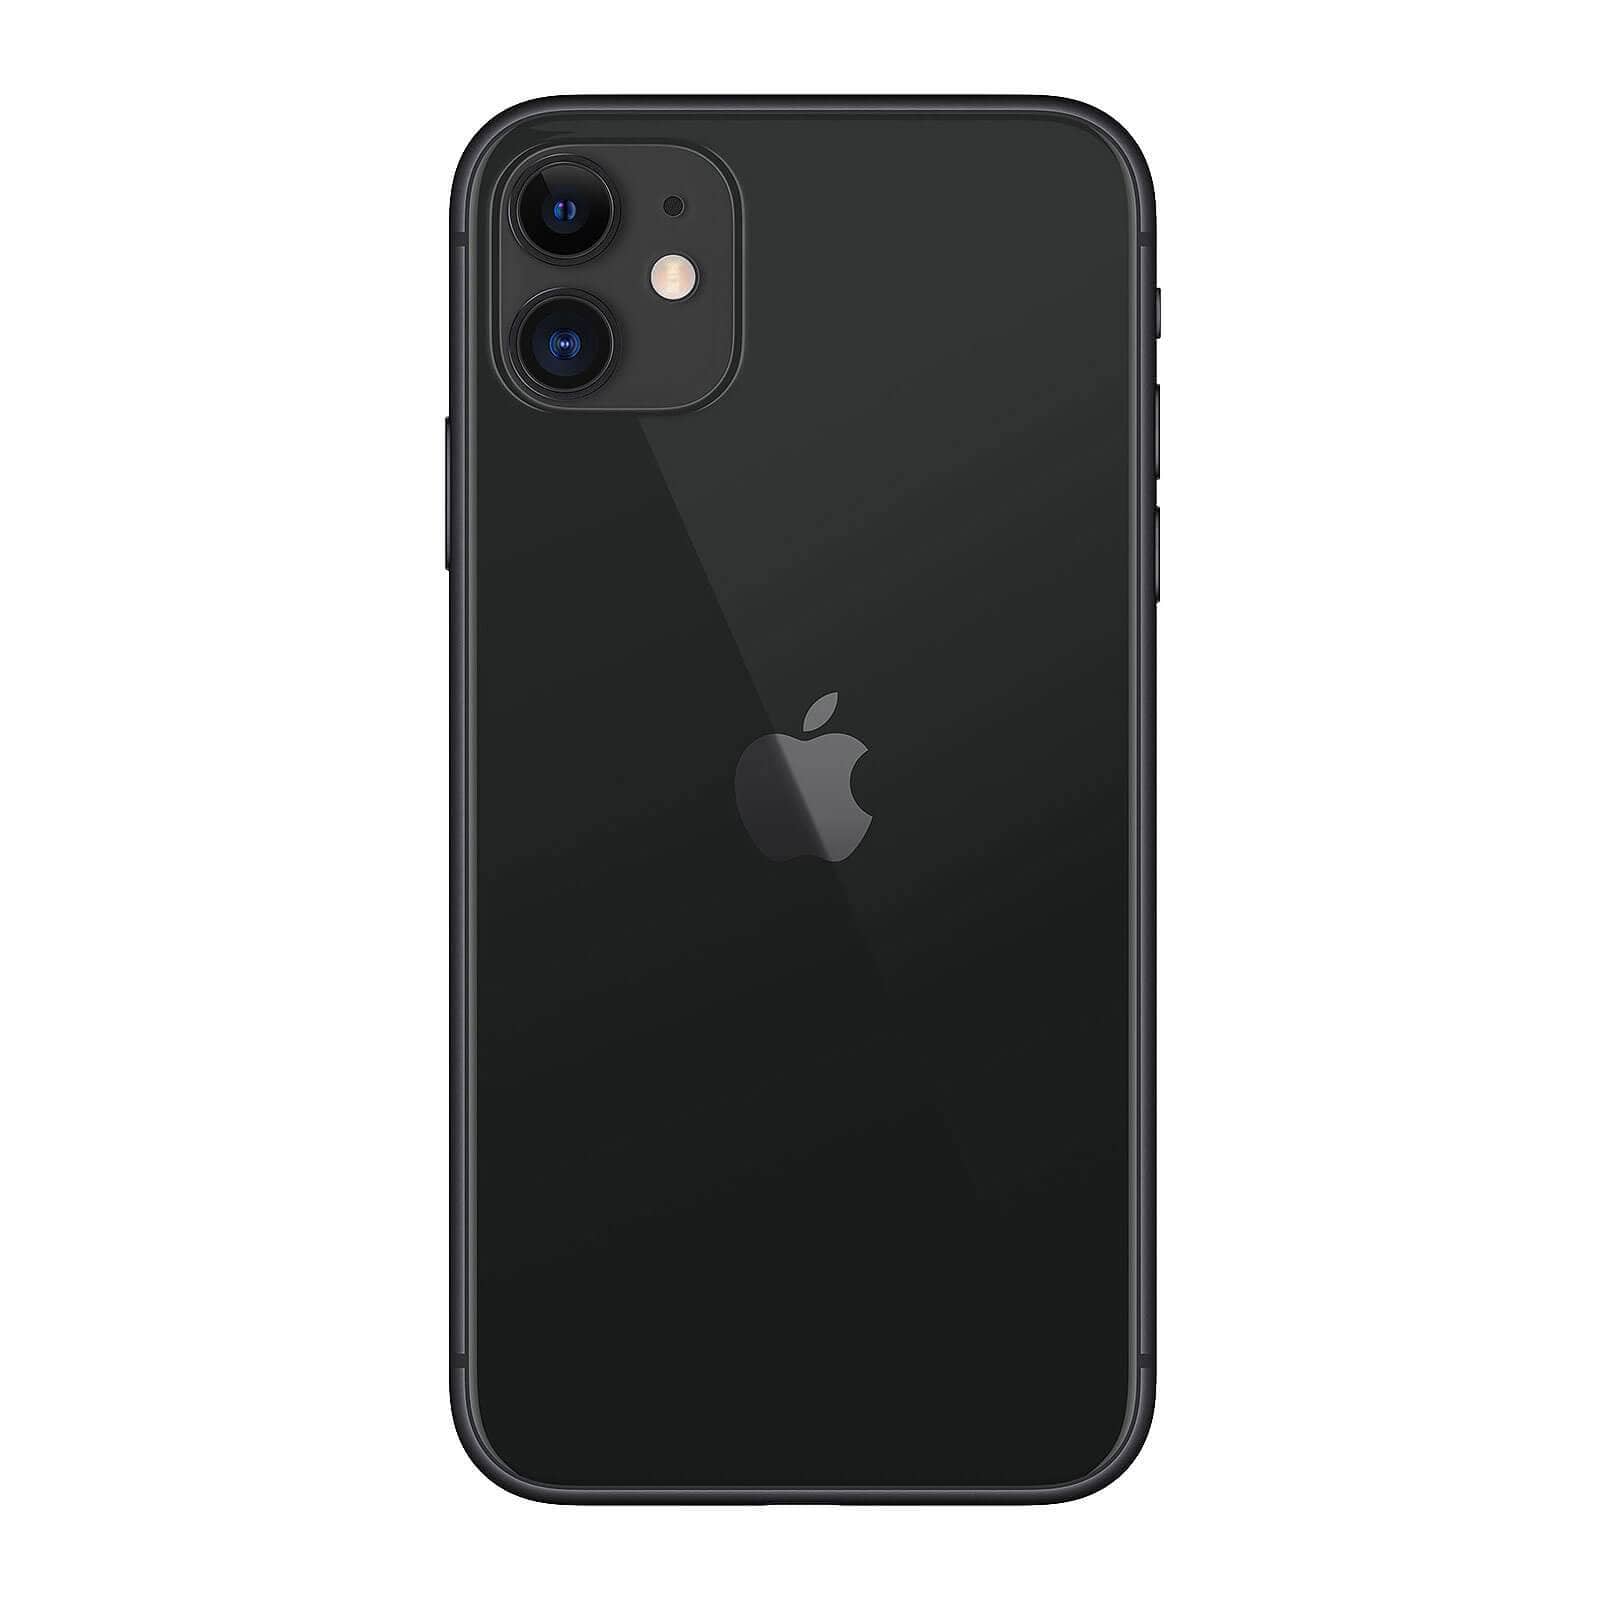 Apple iPhone 11 256GB Black Fair - Unlocked